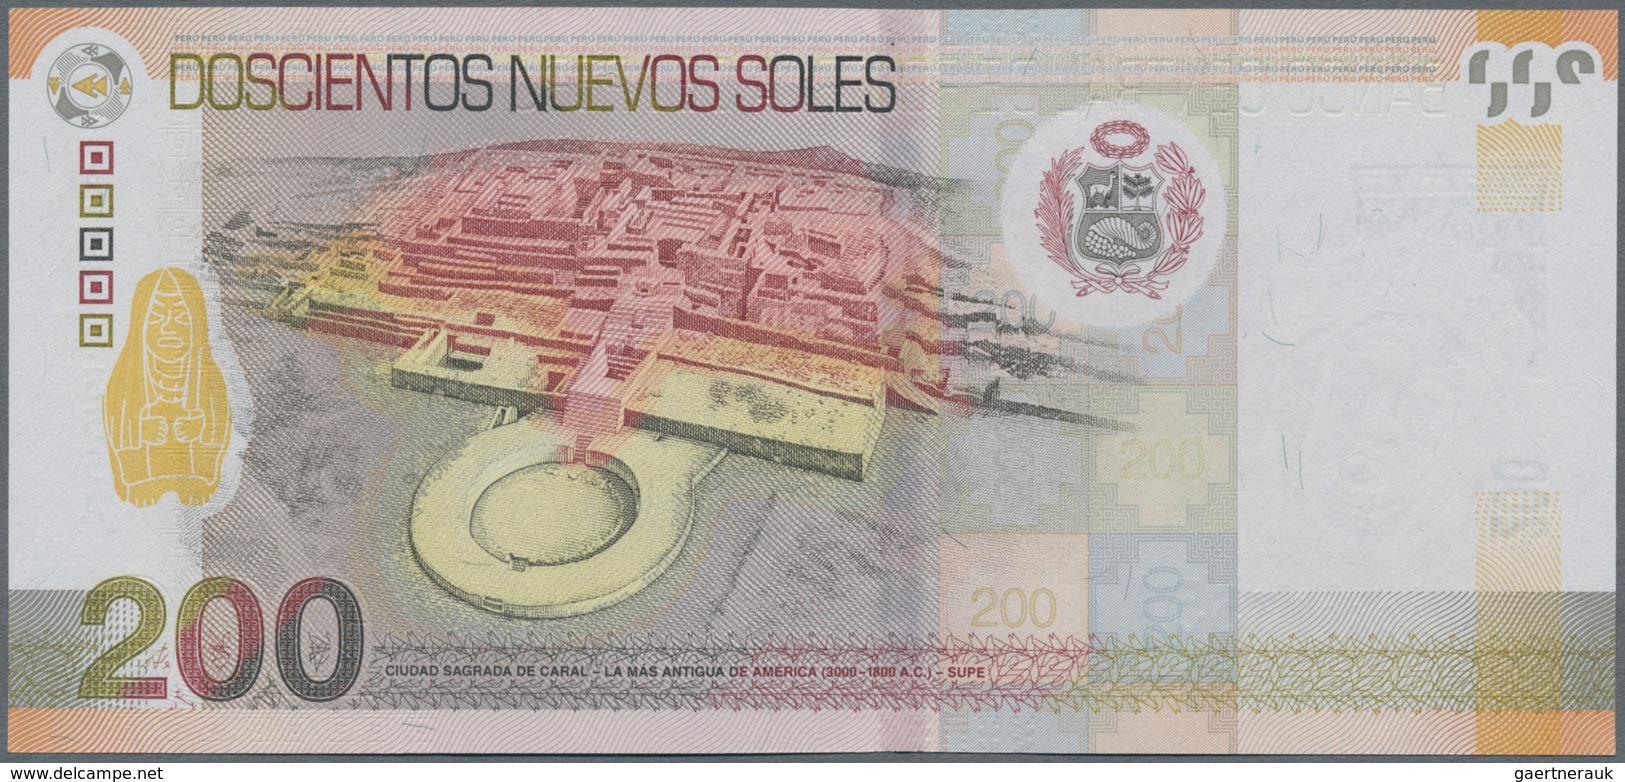 Peru: Banco Central De Reserva Del Perú 200 Nuevos Soles 2009, P.186 In Perfect UNC Condition. - Perú